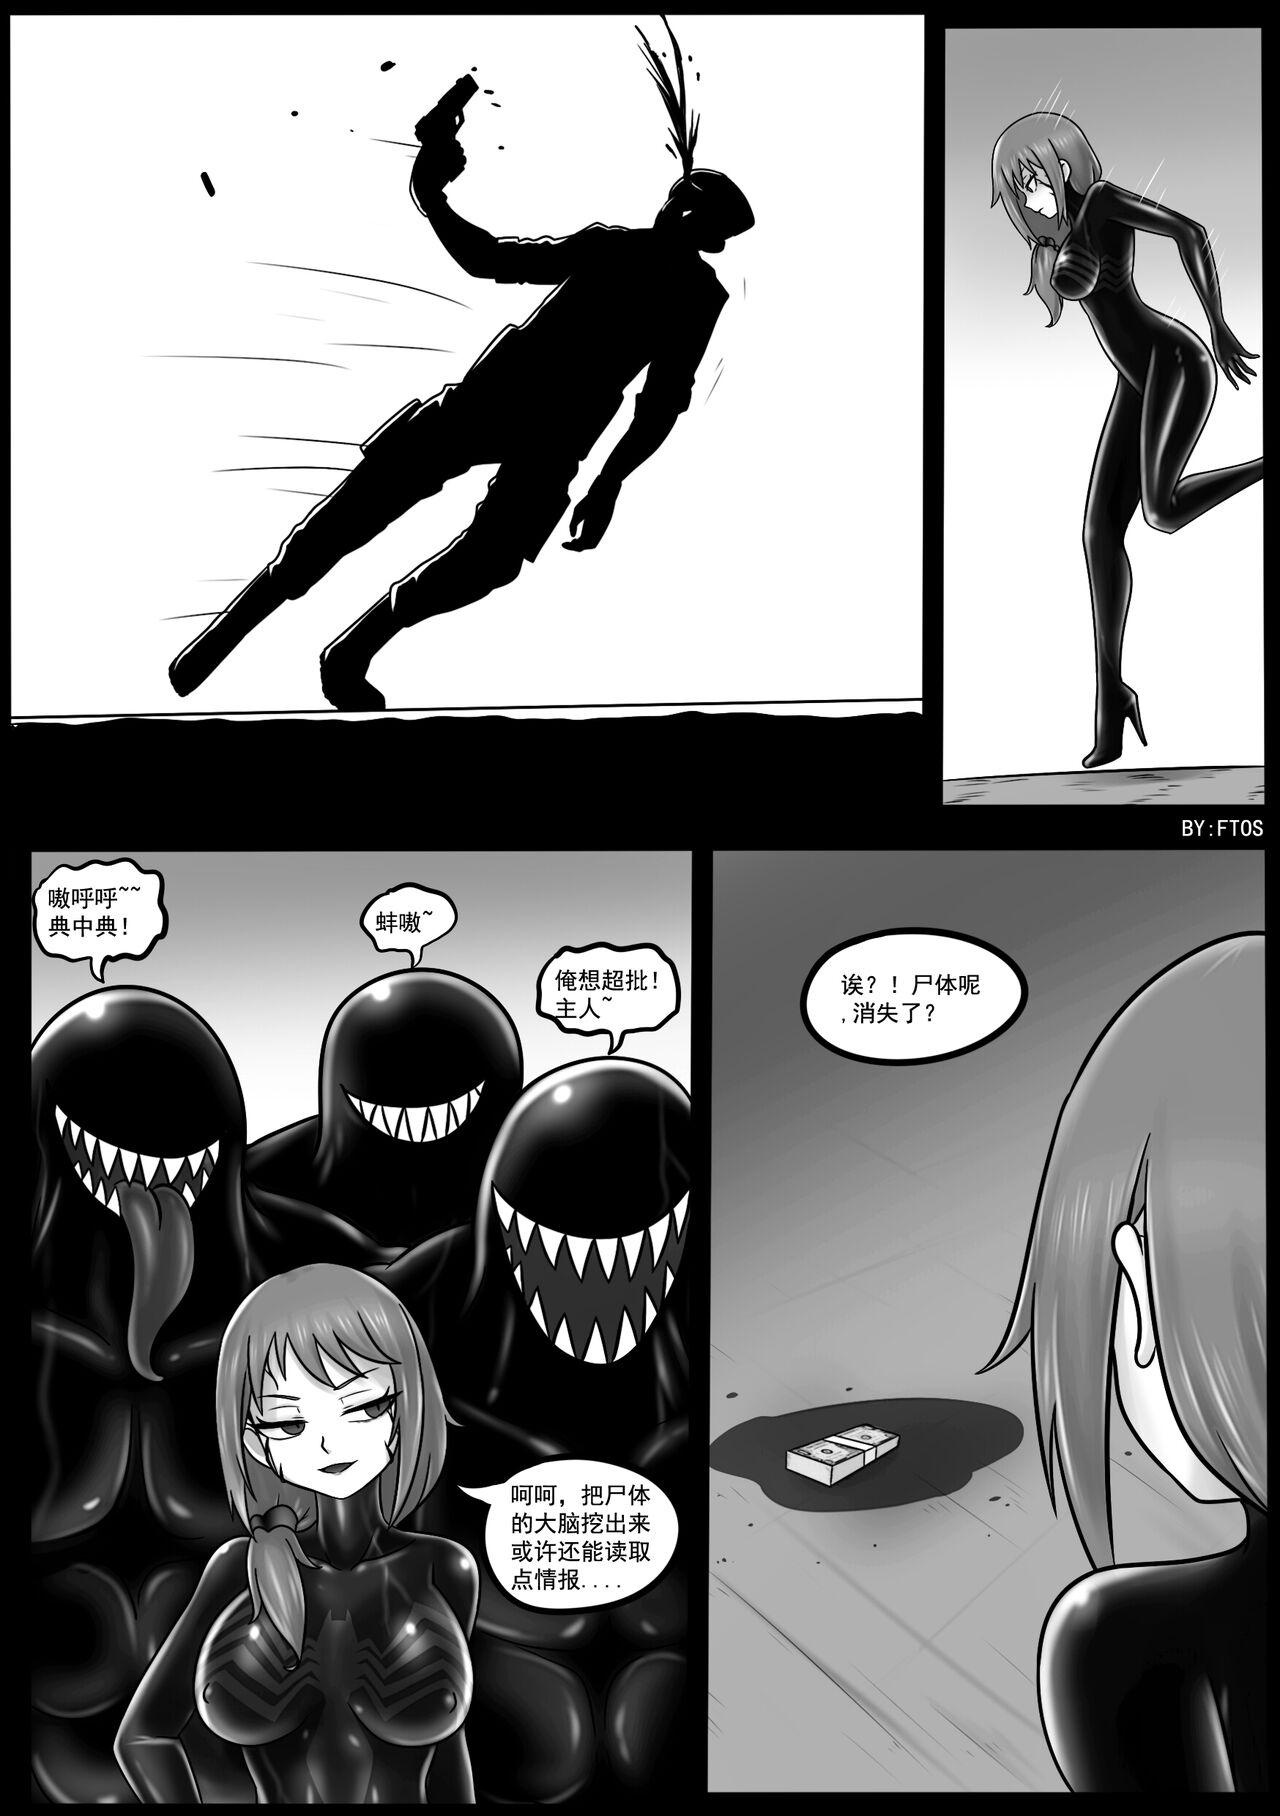 Analplay Venom Invasion IV - Spider man Virginity - Page 10